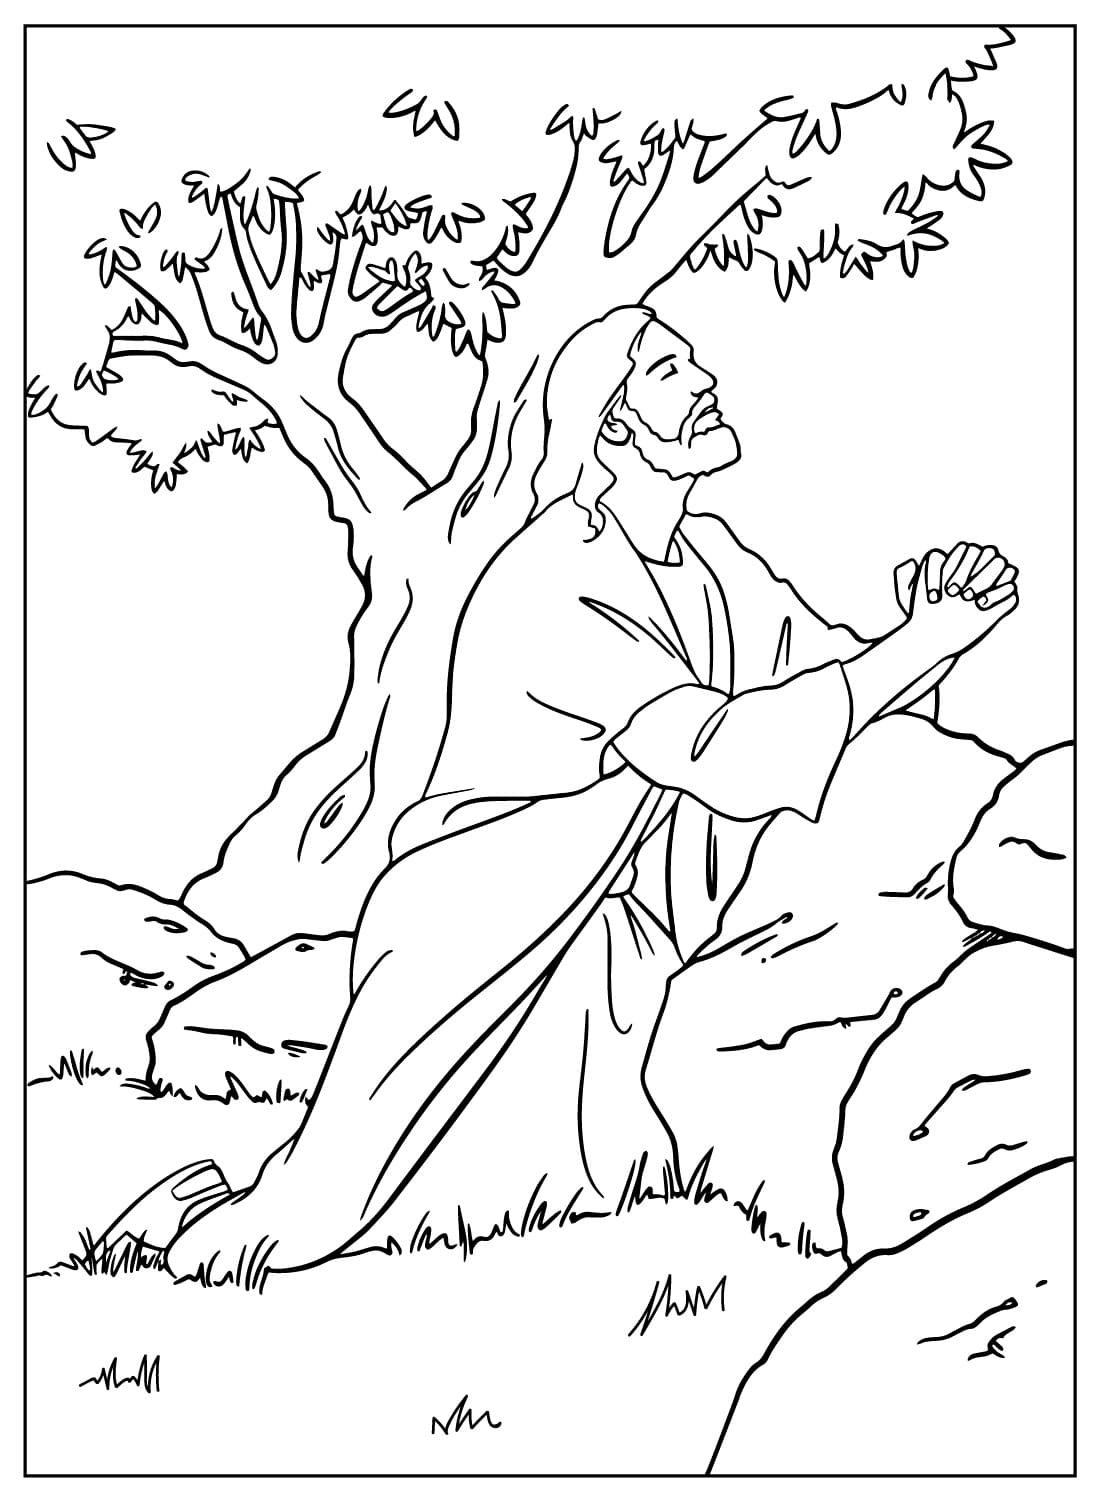 يسوع يصلي في بستان جثسيماني من يسوع